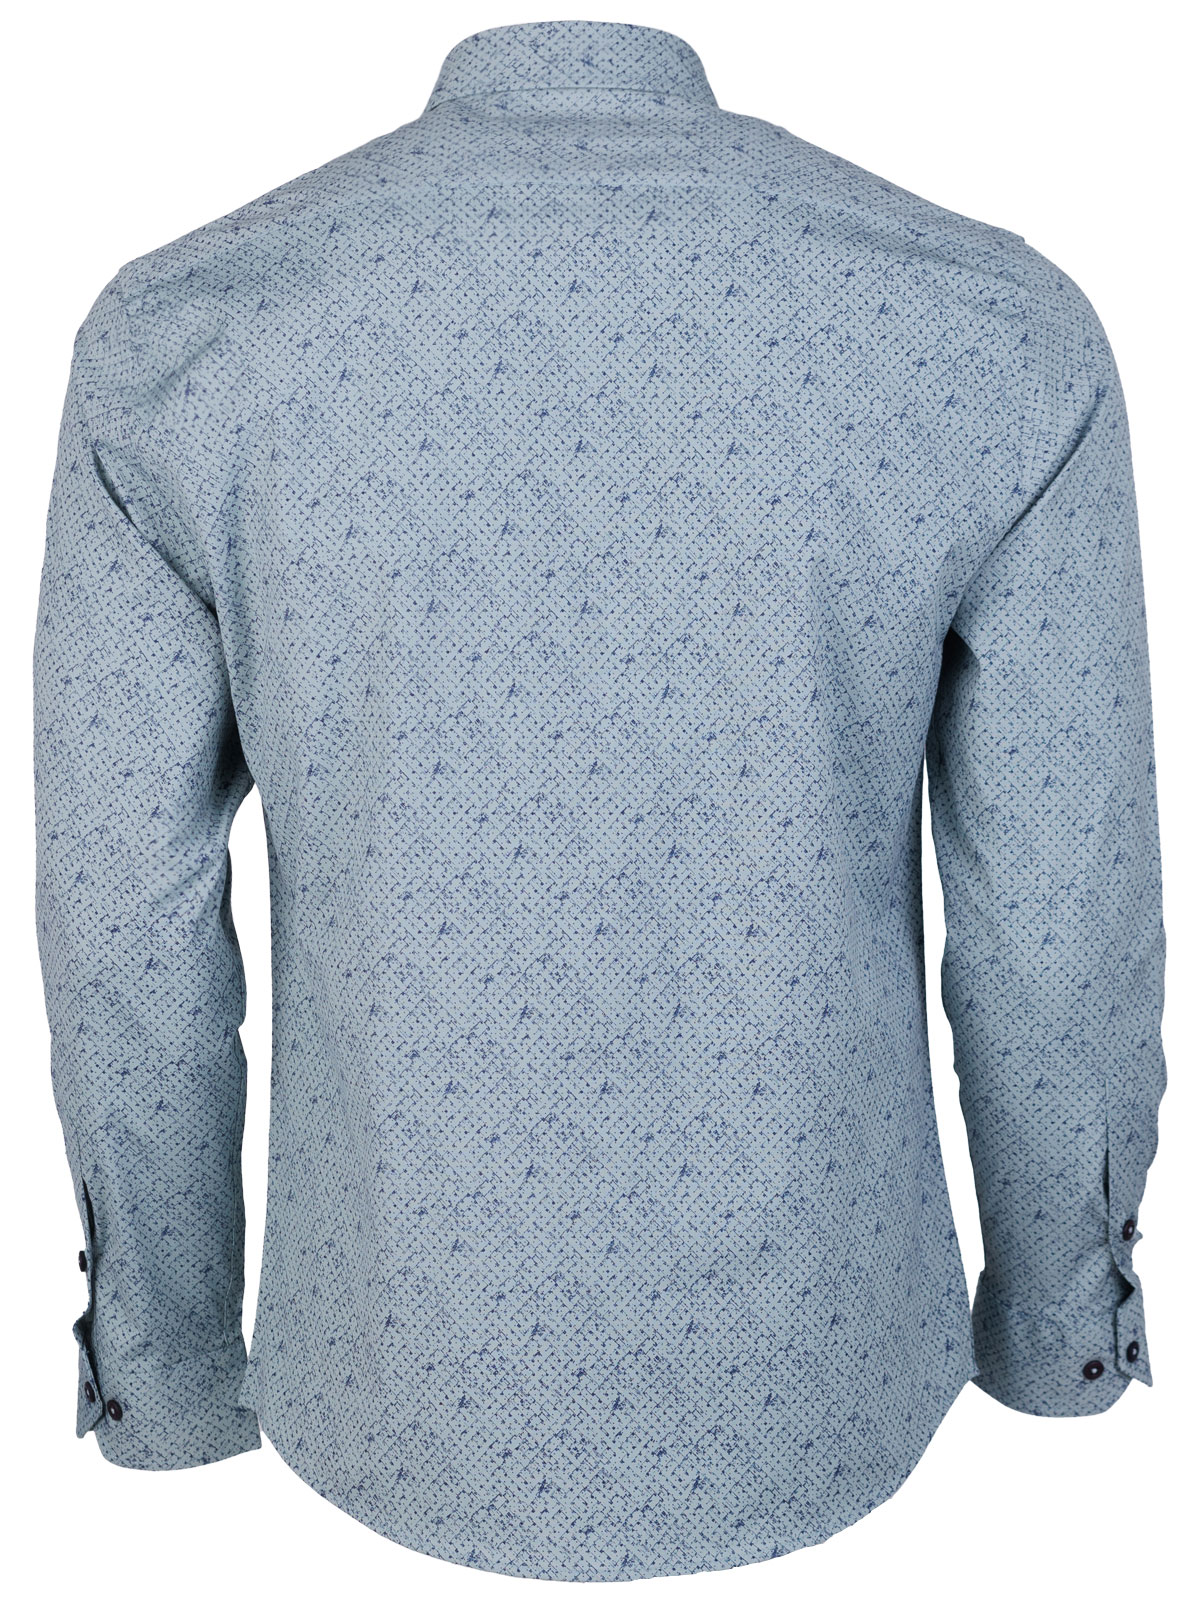 Ανδρικό πουκάμισο σε χρώμα μέντας - 21613 € 44.43 img2